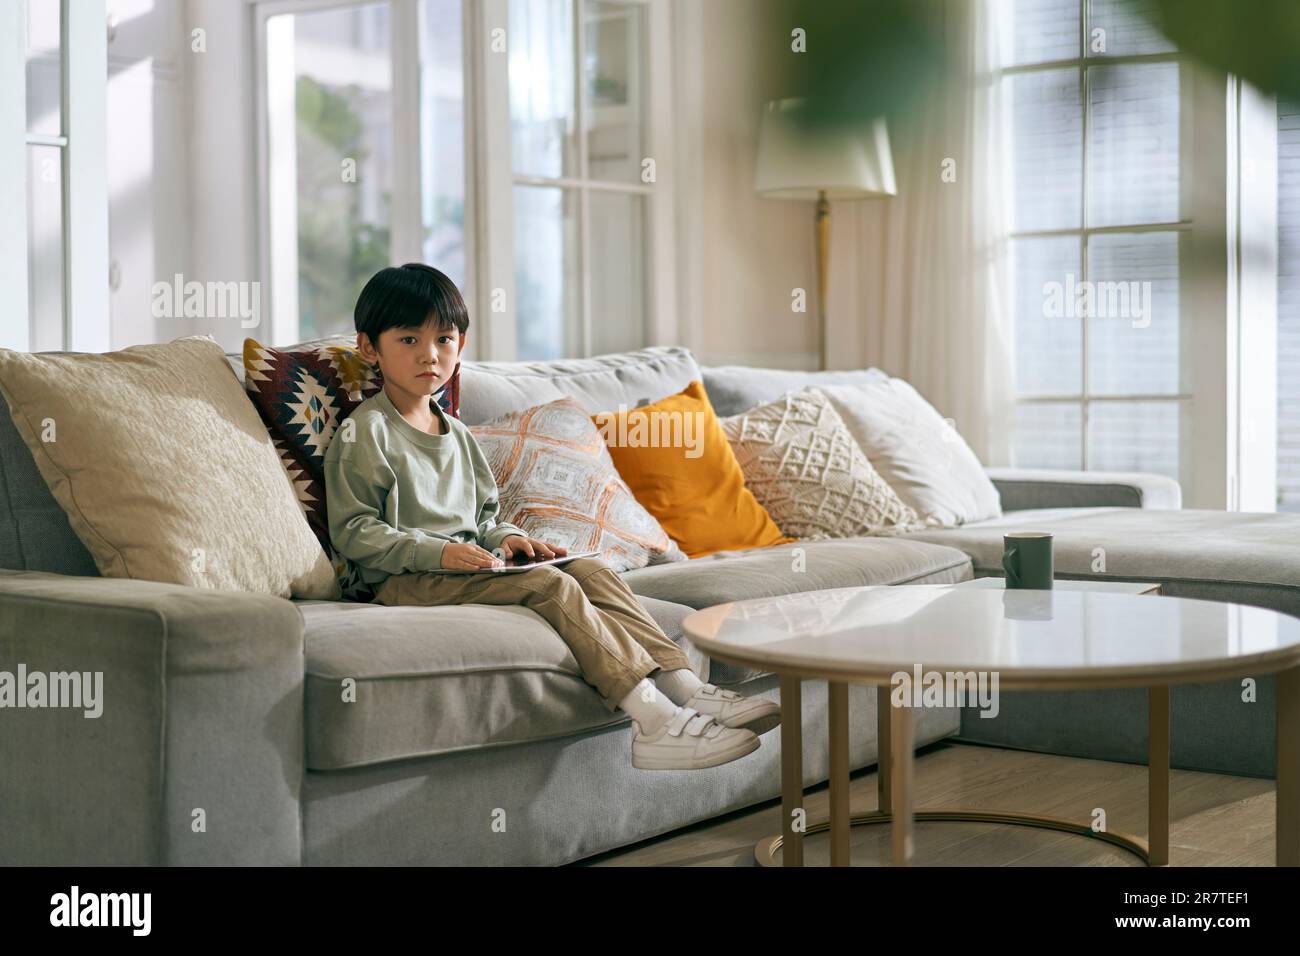 un petit garçon asiatique assis sur un canapé de famille dans la salle de séjour à la maison a l'air triste Banque D'Images